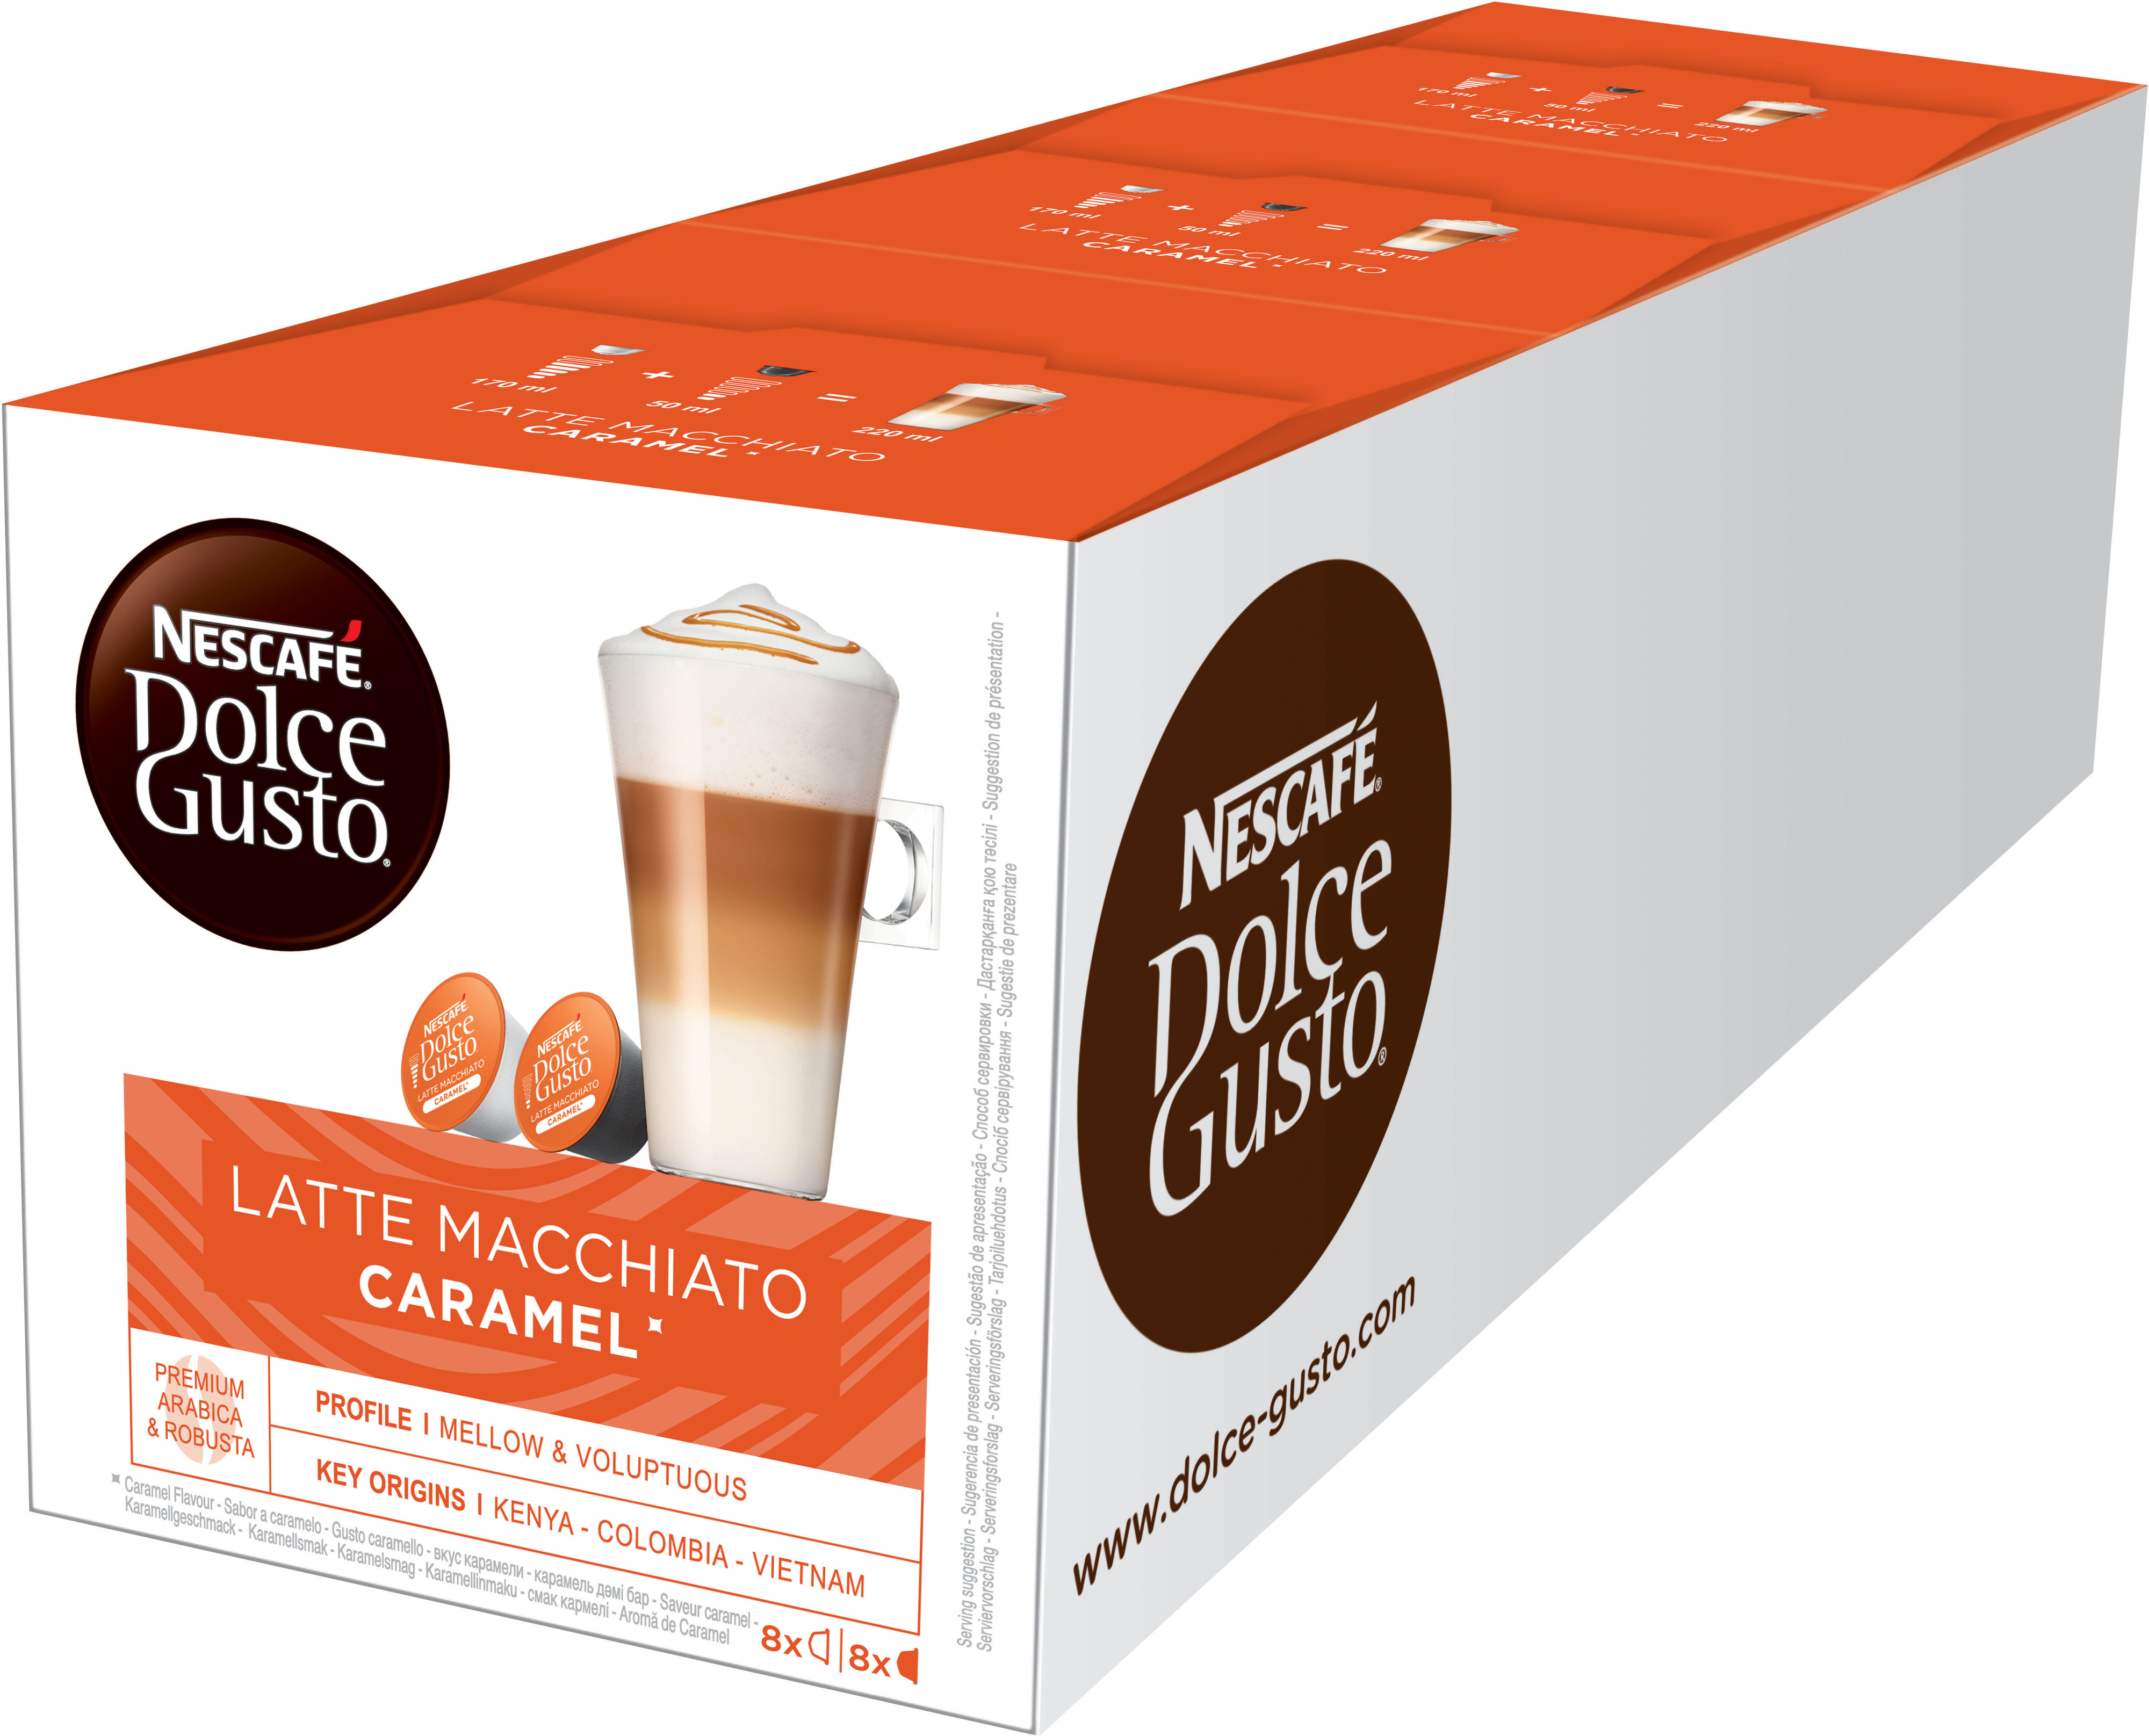 Dolce latte. Кофе в капсулах Nescafe Dolce gusto Latte Macchiato.